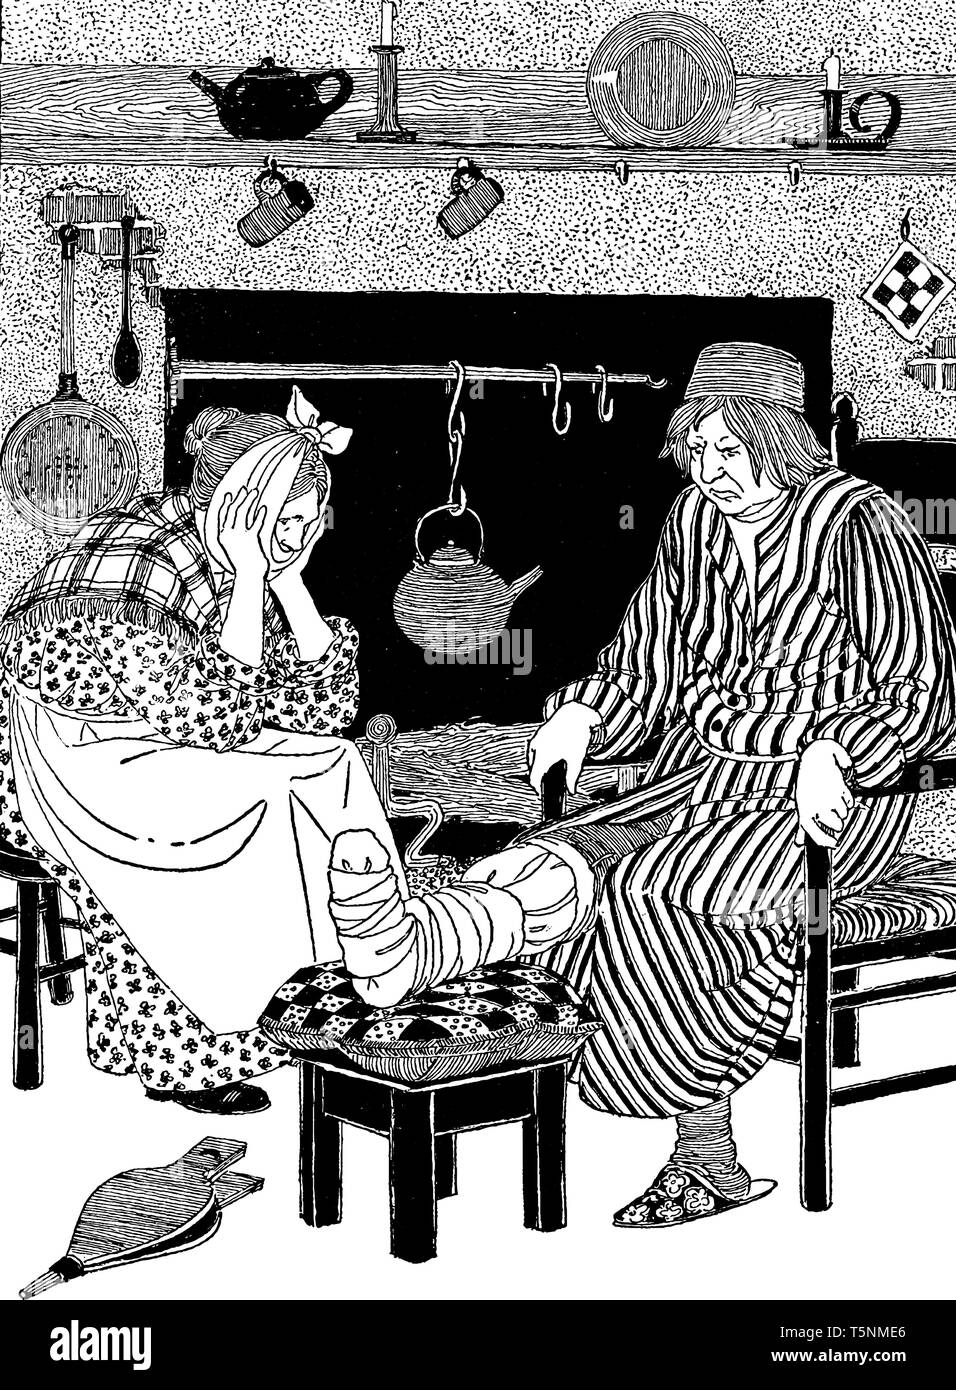 Un uomo con la gamba ferita e donna seduta su sedie vicino al caminetto, bollitore mantenuto sul fuoco, vintage disegno della linea di incisione o illustrazione Illustrazione Vettoriale